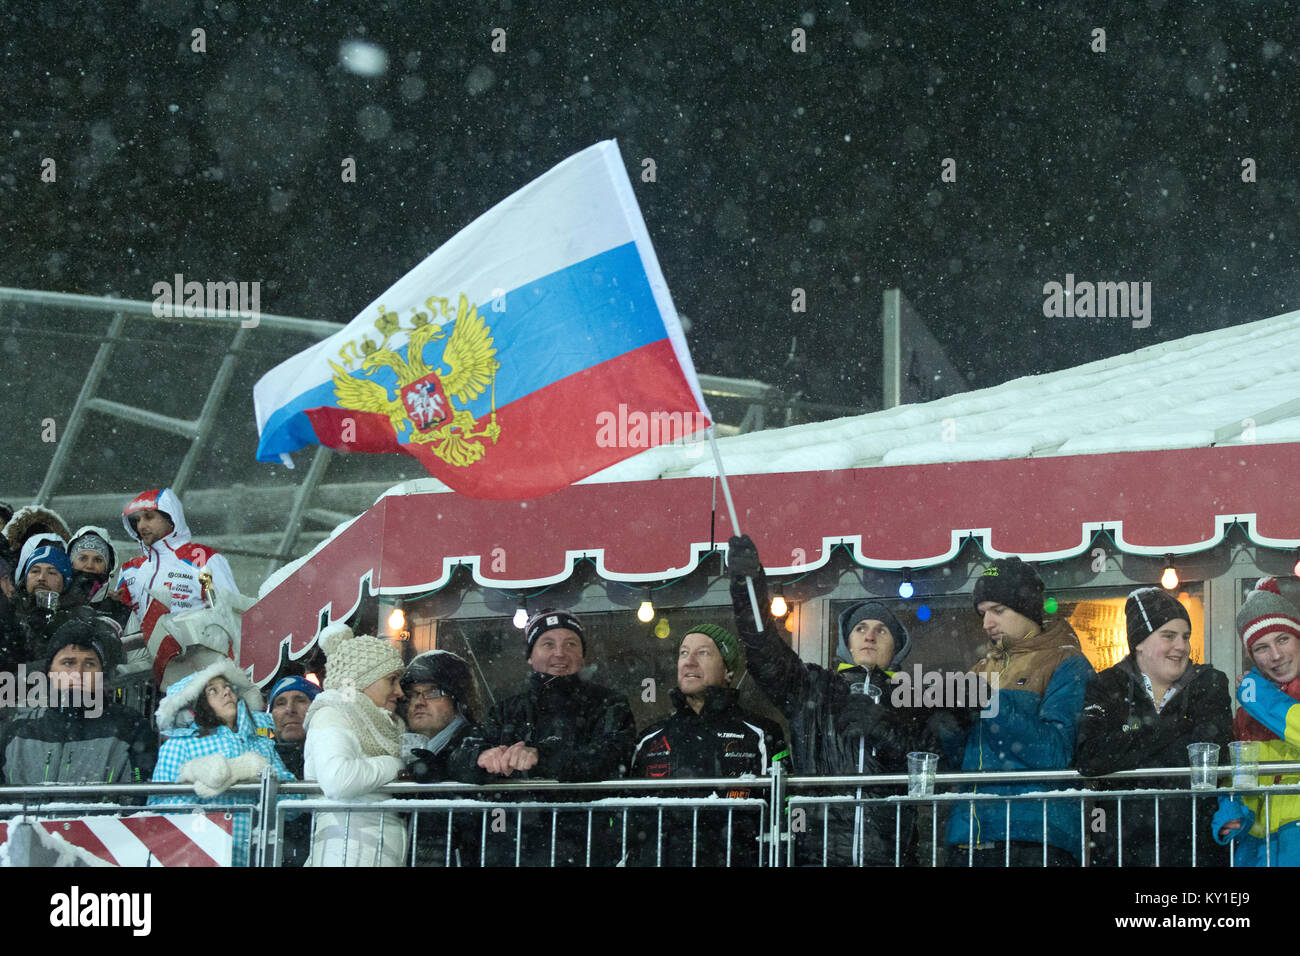 Die russische World Cup Alpine Ski Racer Alexander Khoroshilov gewann seinen ersten WM-Sieg und ging oben auf dem Podium stehen für die Freude und das Glück der russischen Fans in Schladming. Photo Credit: Christoph Oberschneider. Stockfoto